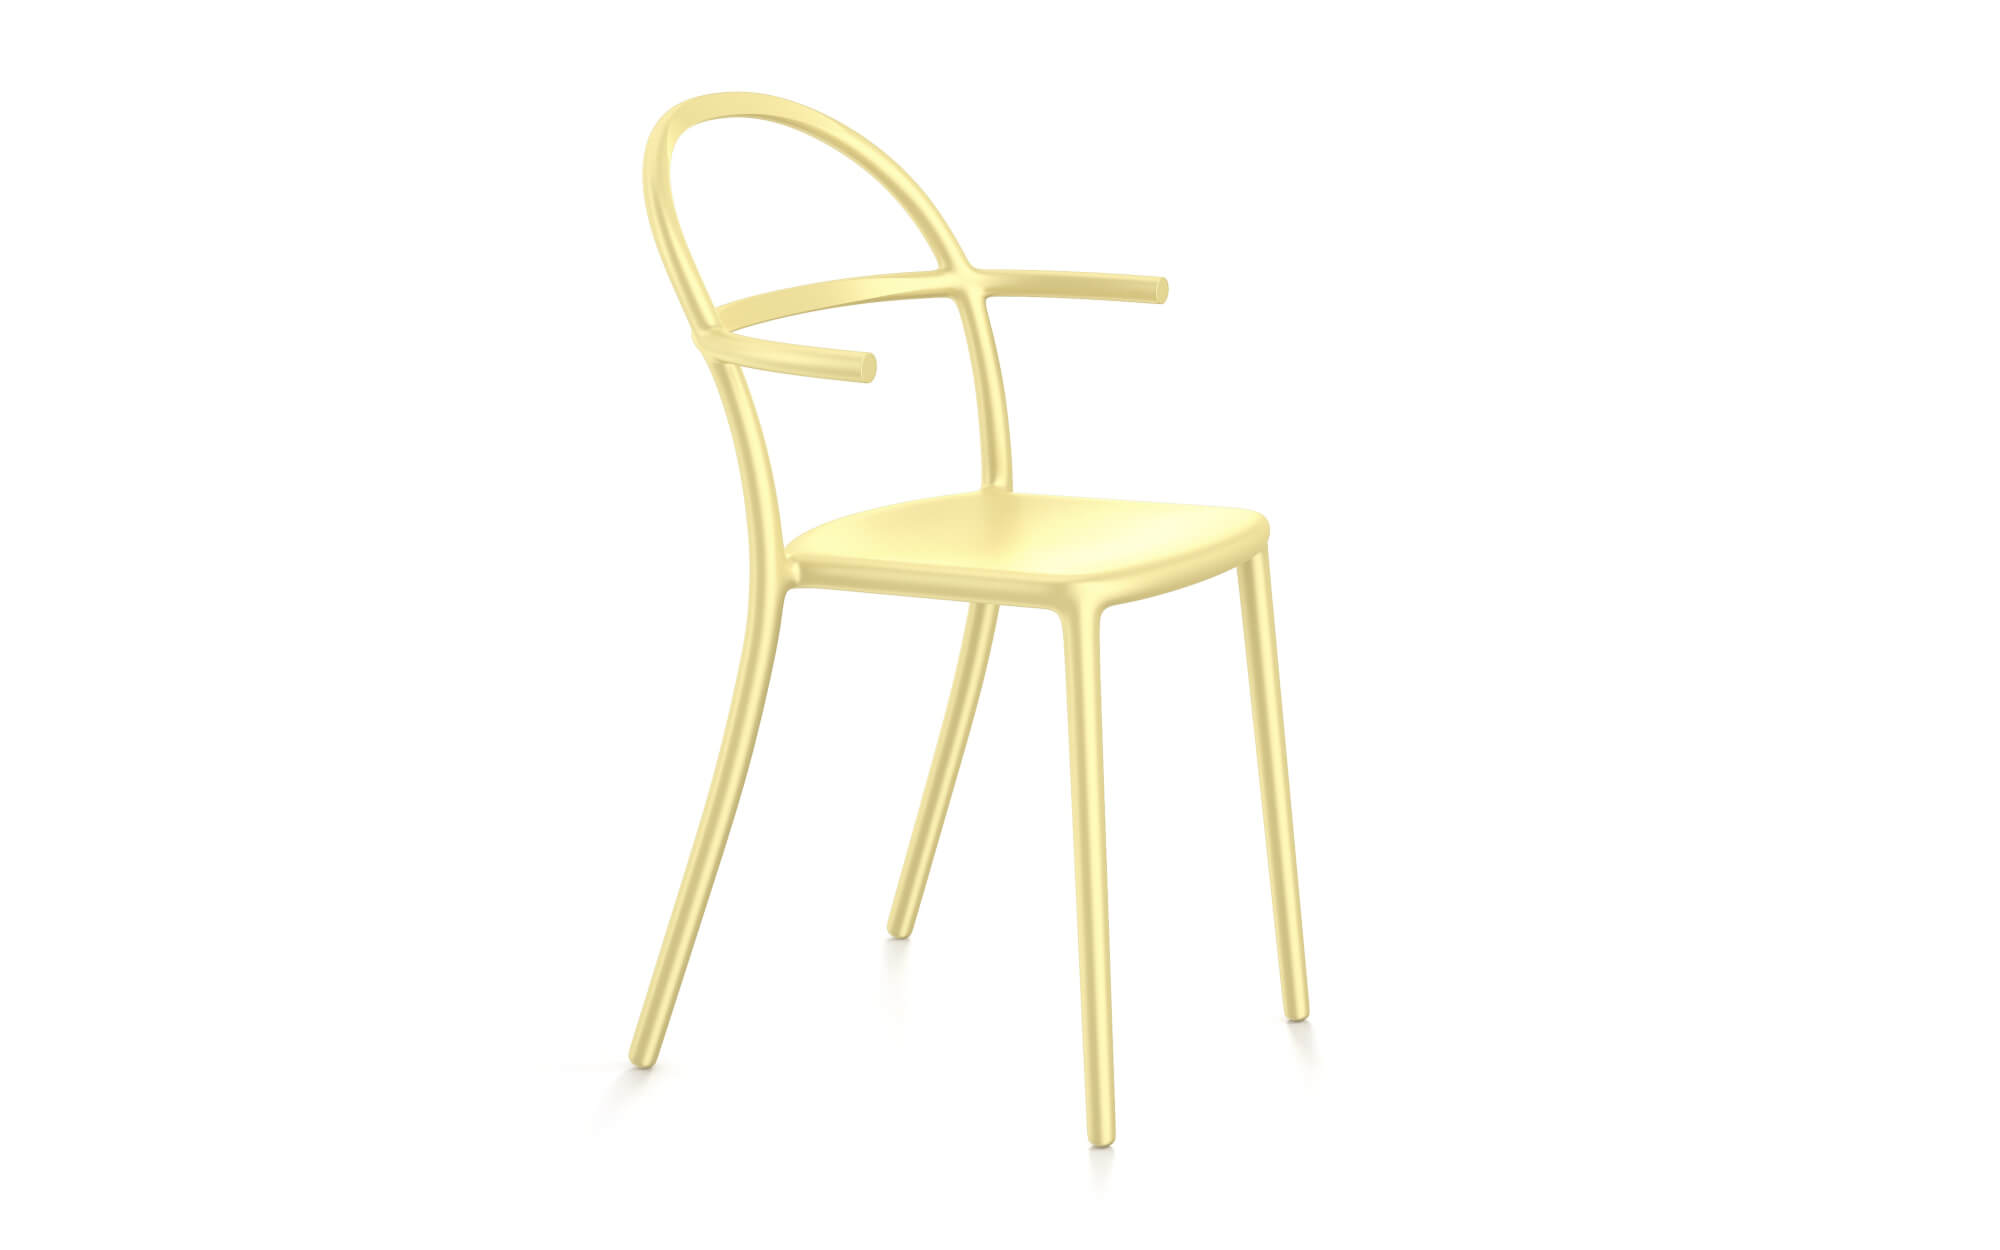 GENERIC.C (KARTELL) - Chairs